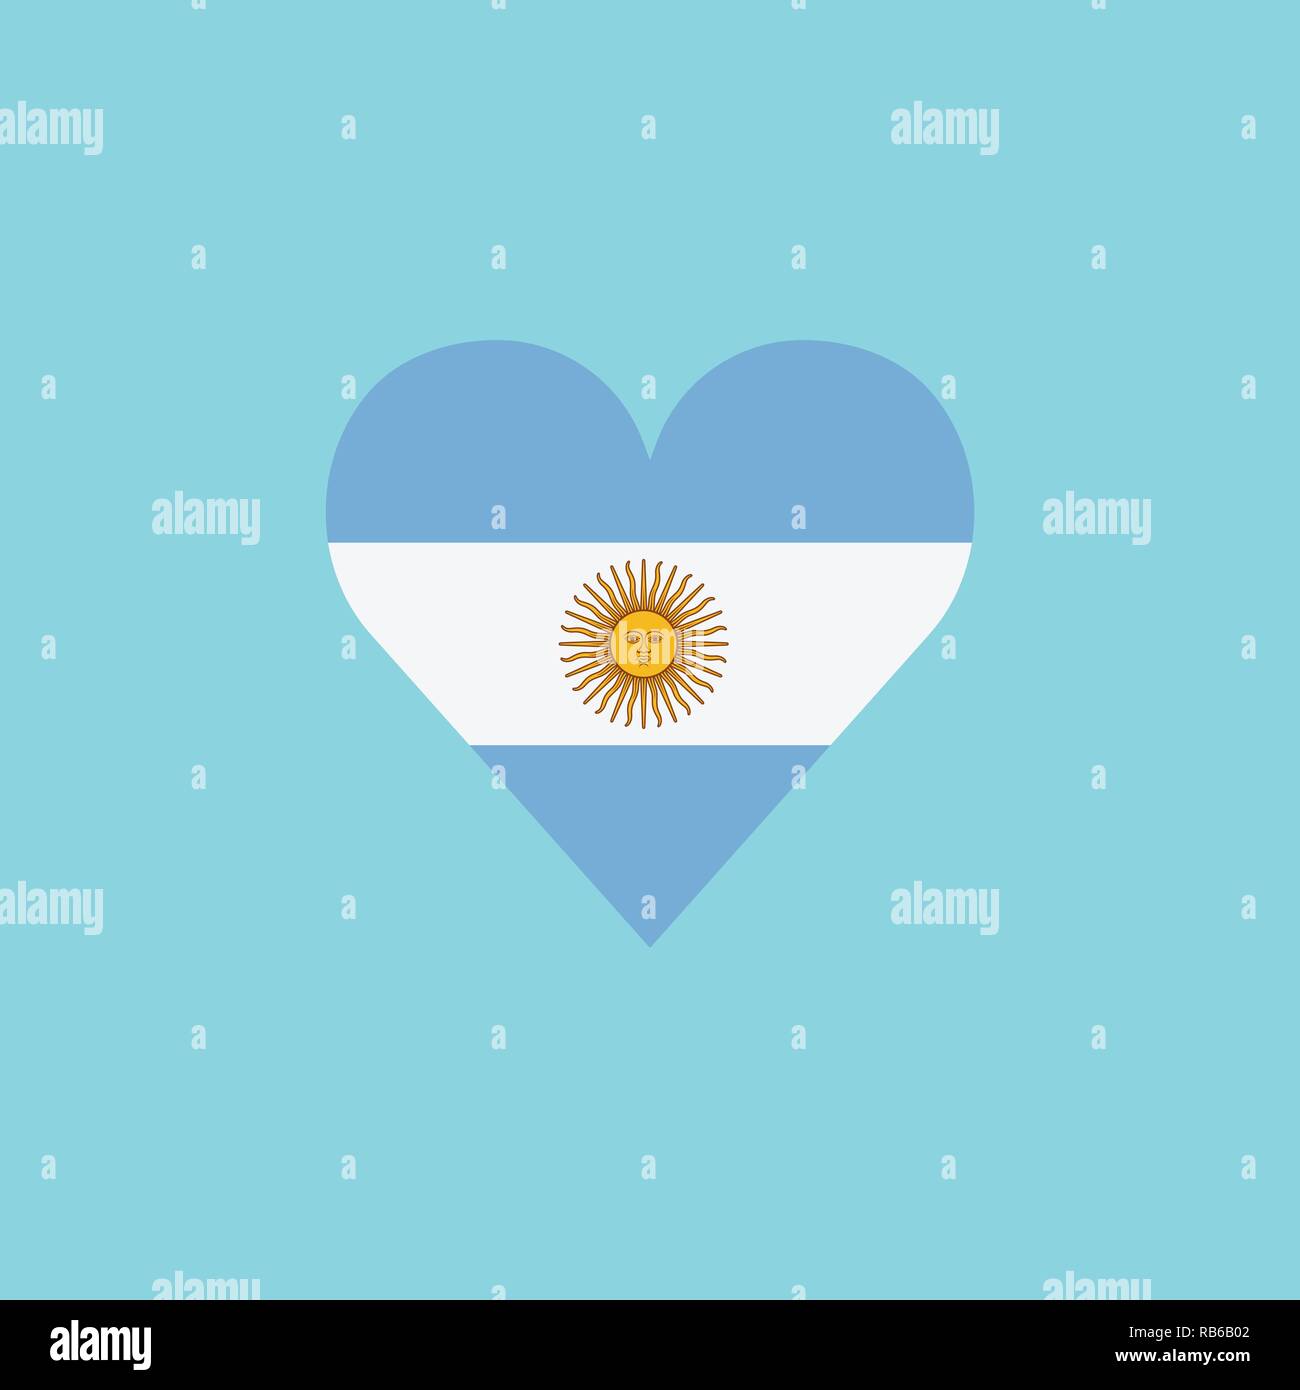 Icono De La Bandera Argentina En Un Diseno Plano En Forma De Corazon Dia De La Independencia O El Concepto De Las Vacaciones Del Dia Nacional Imagen Vector De Stock Alamy